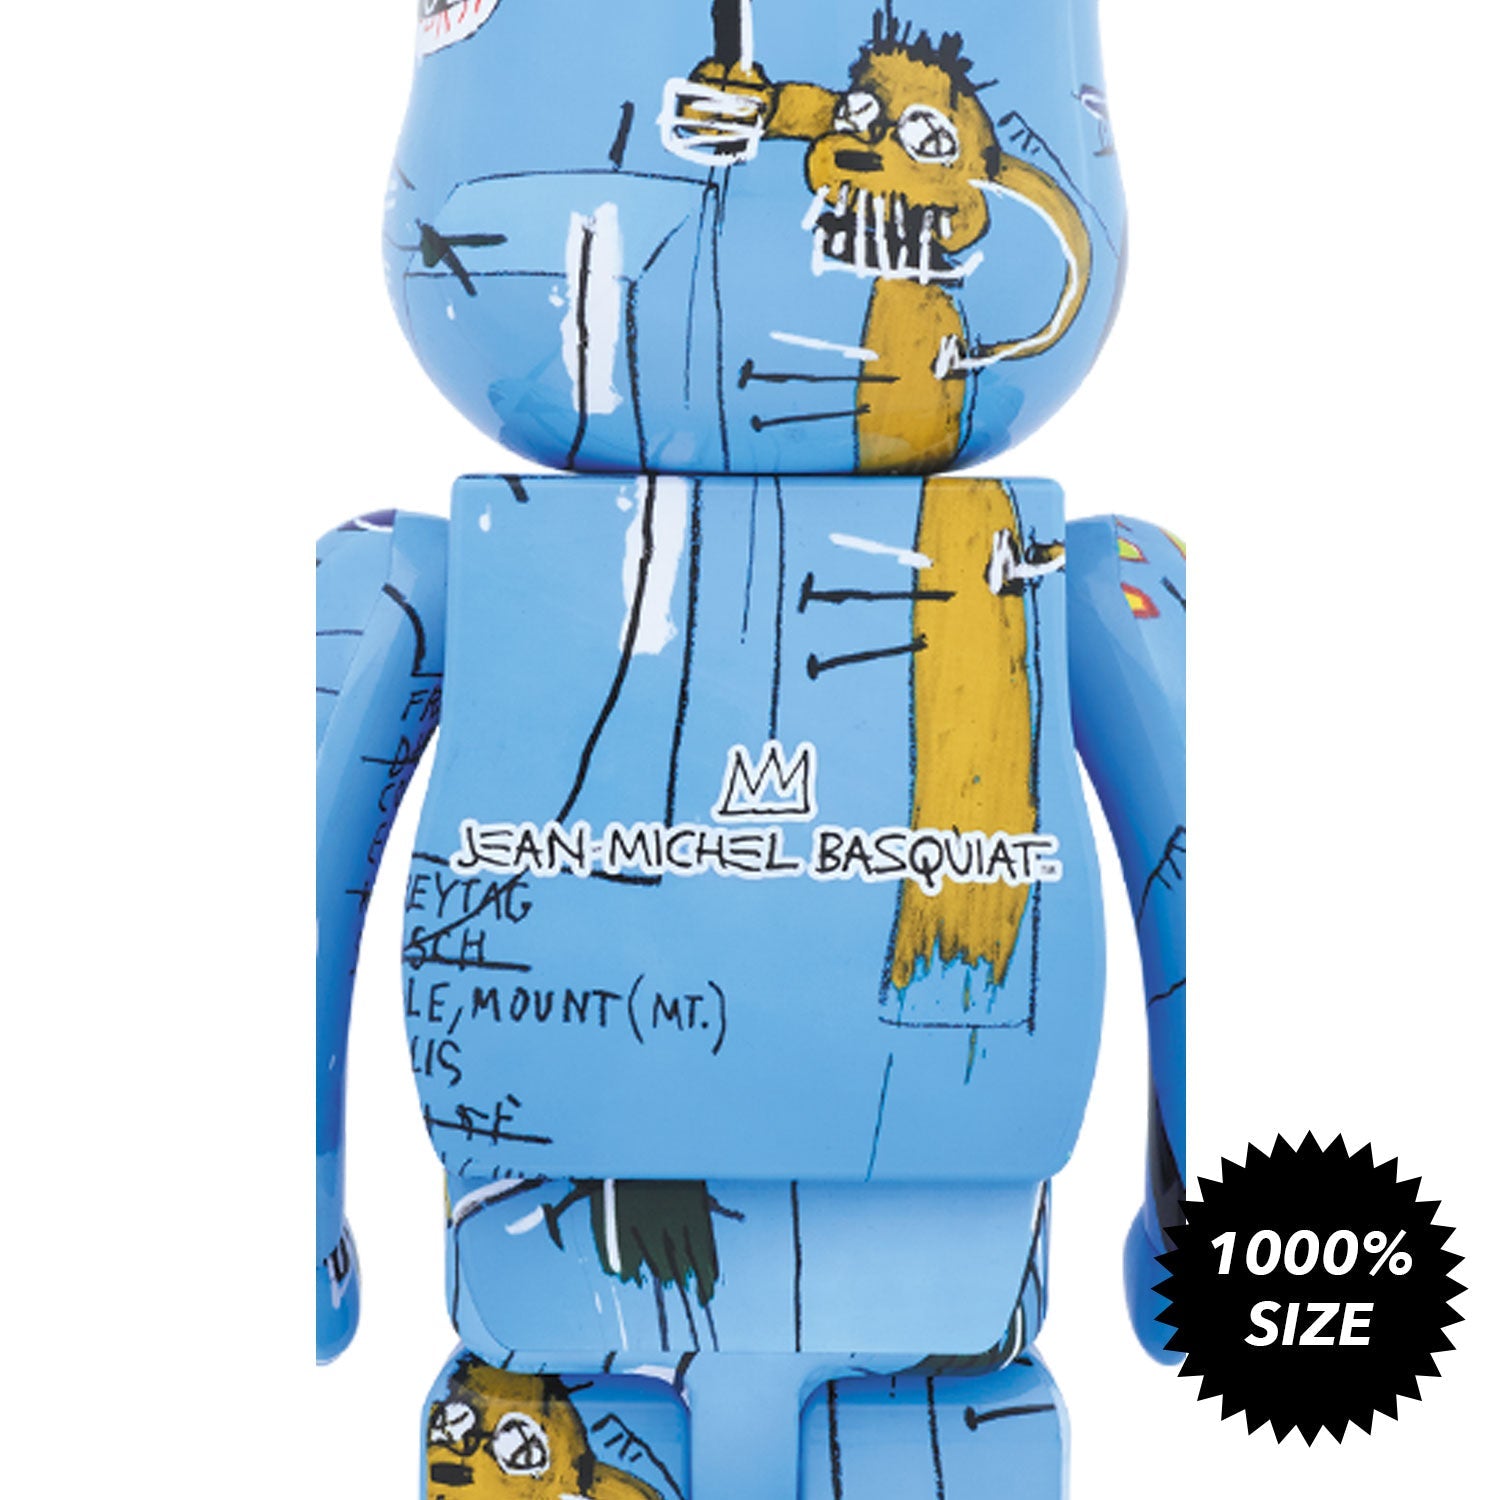 Jean-Michel Basquiat #4 1000% Bearbrick by Medicom Toy